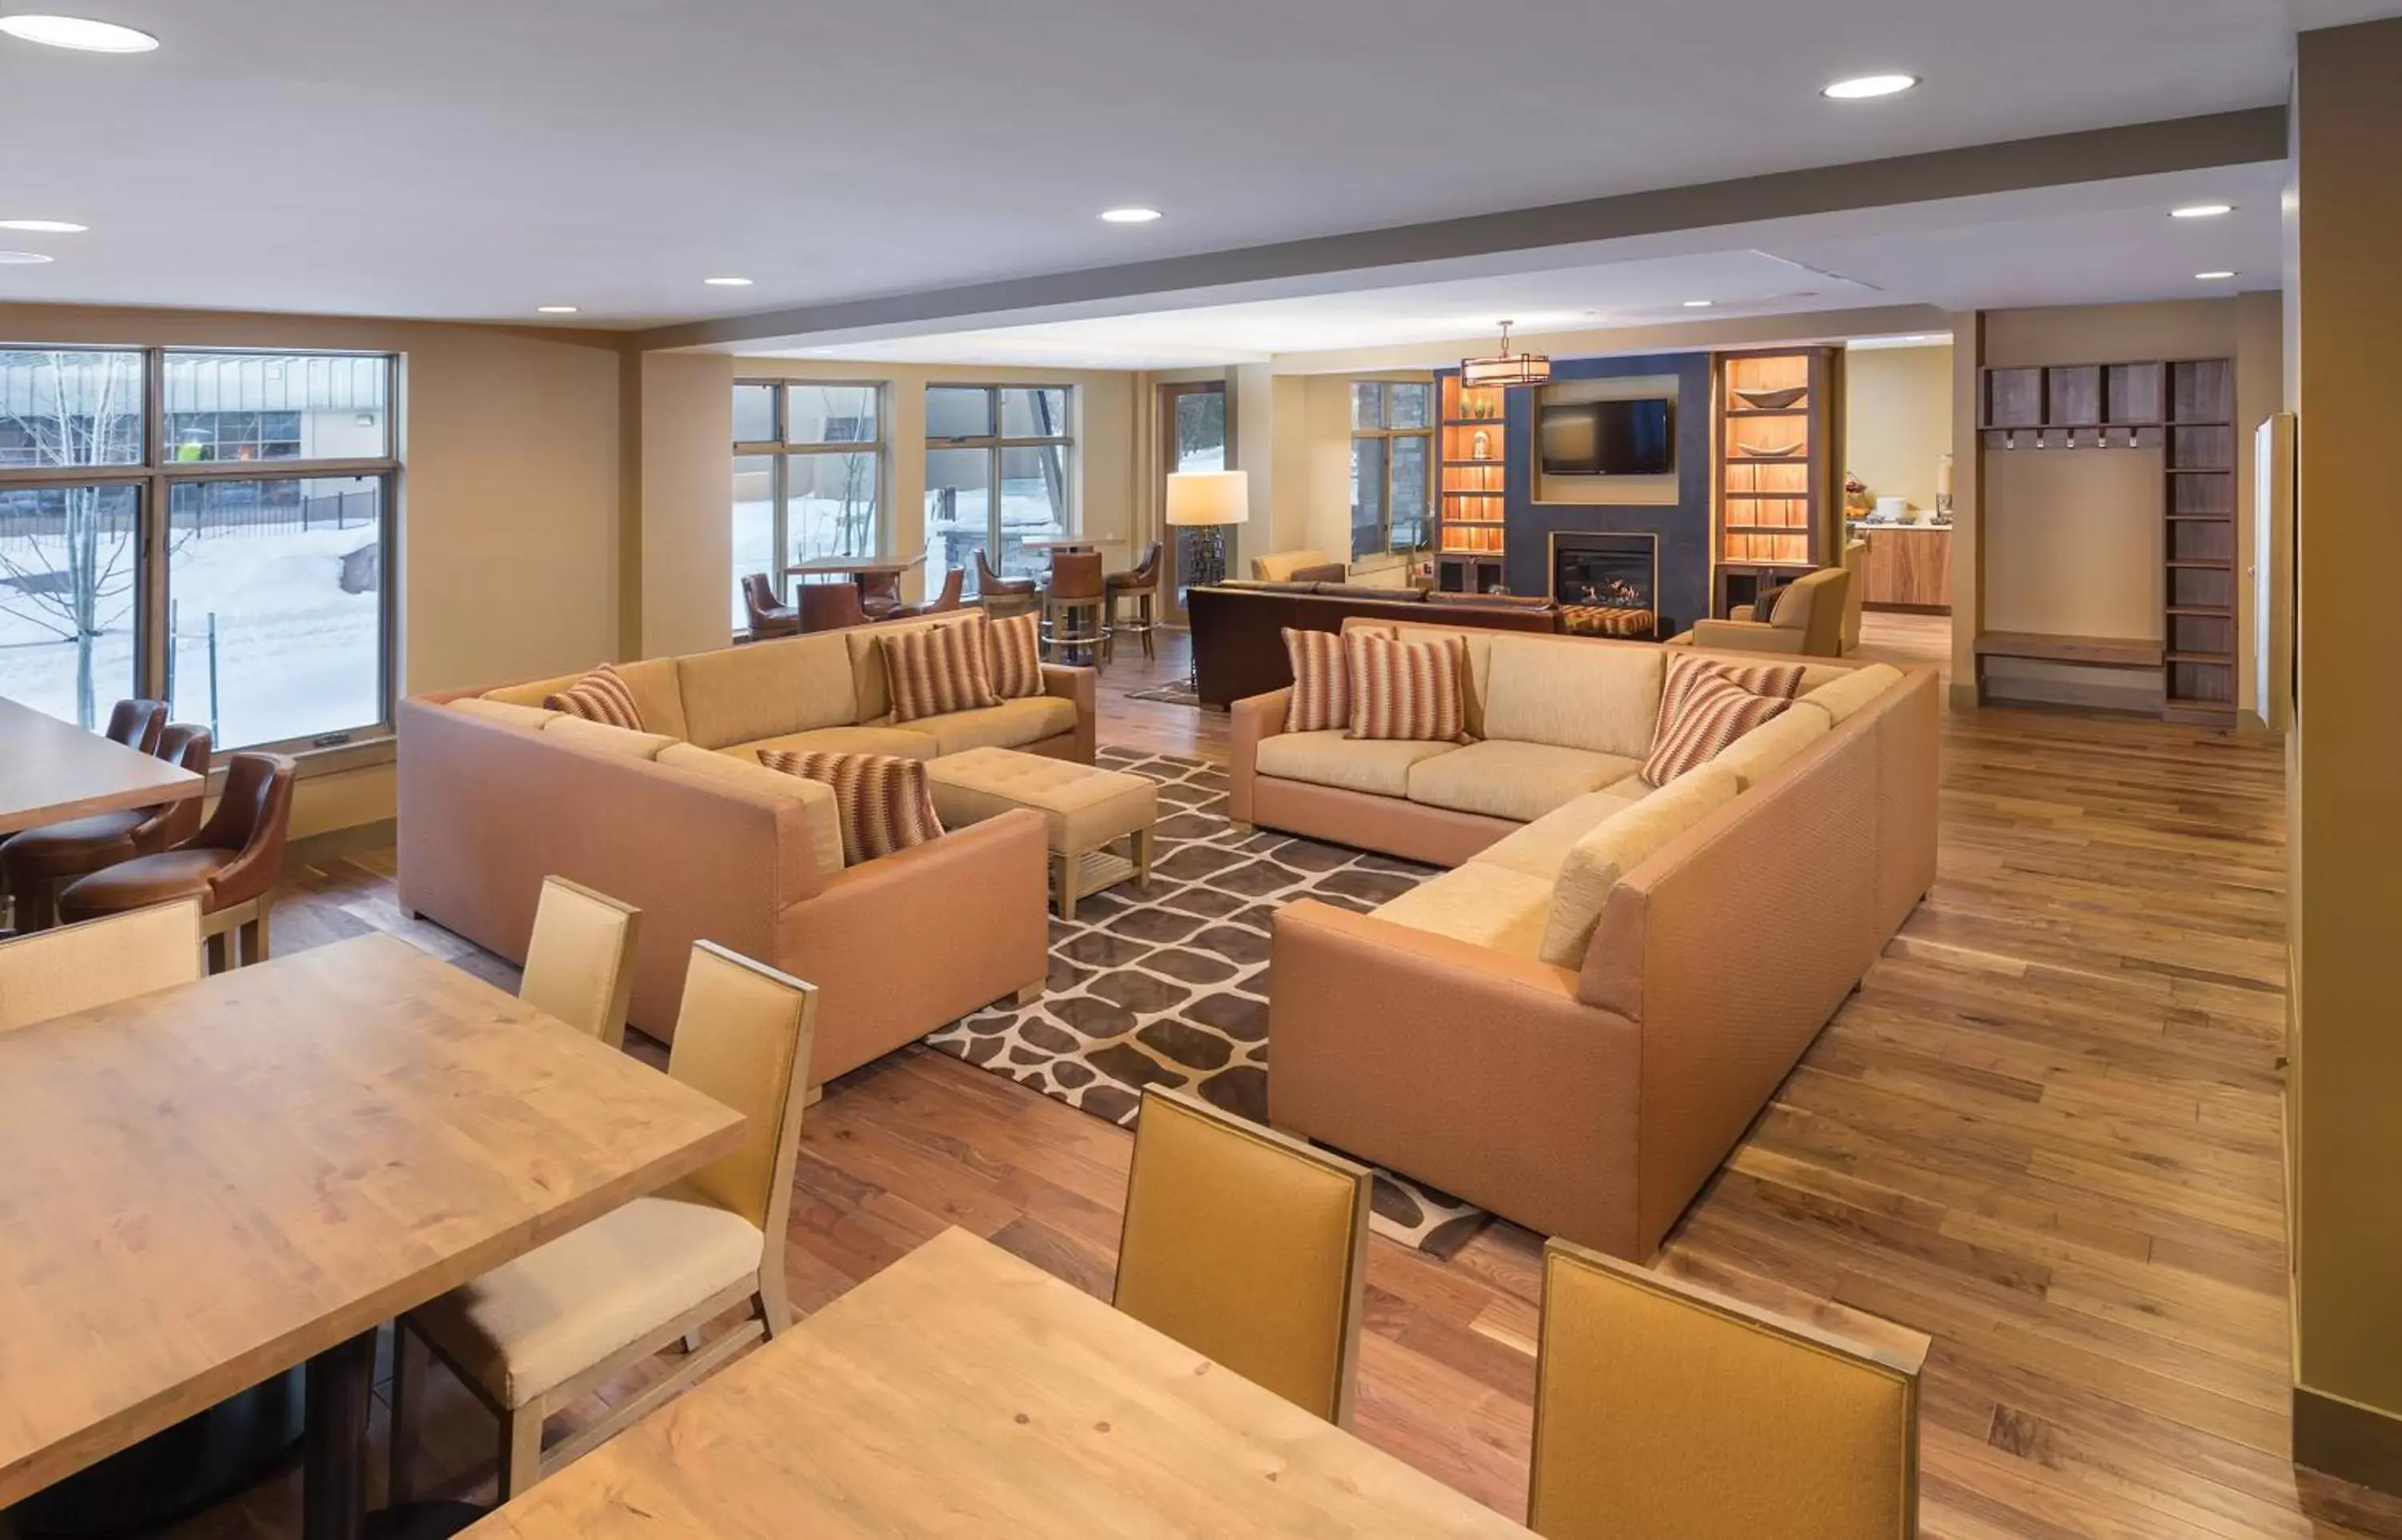 Lobby or reception, Lounge/Bar in Club Wyndham Resort at Avon